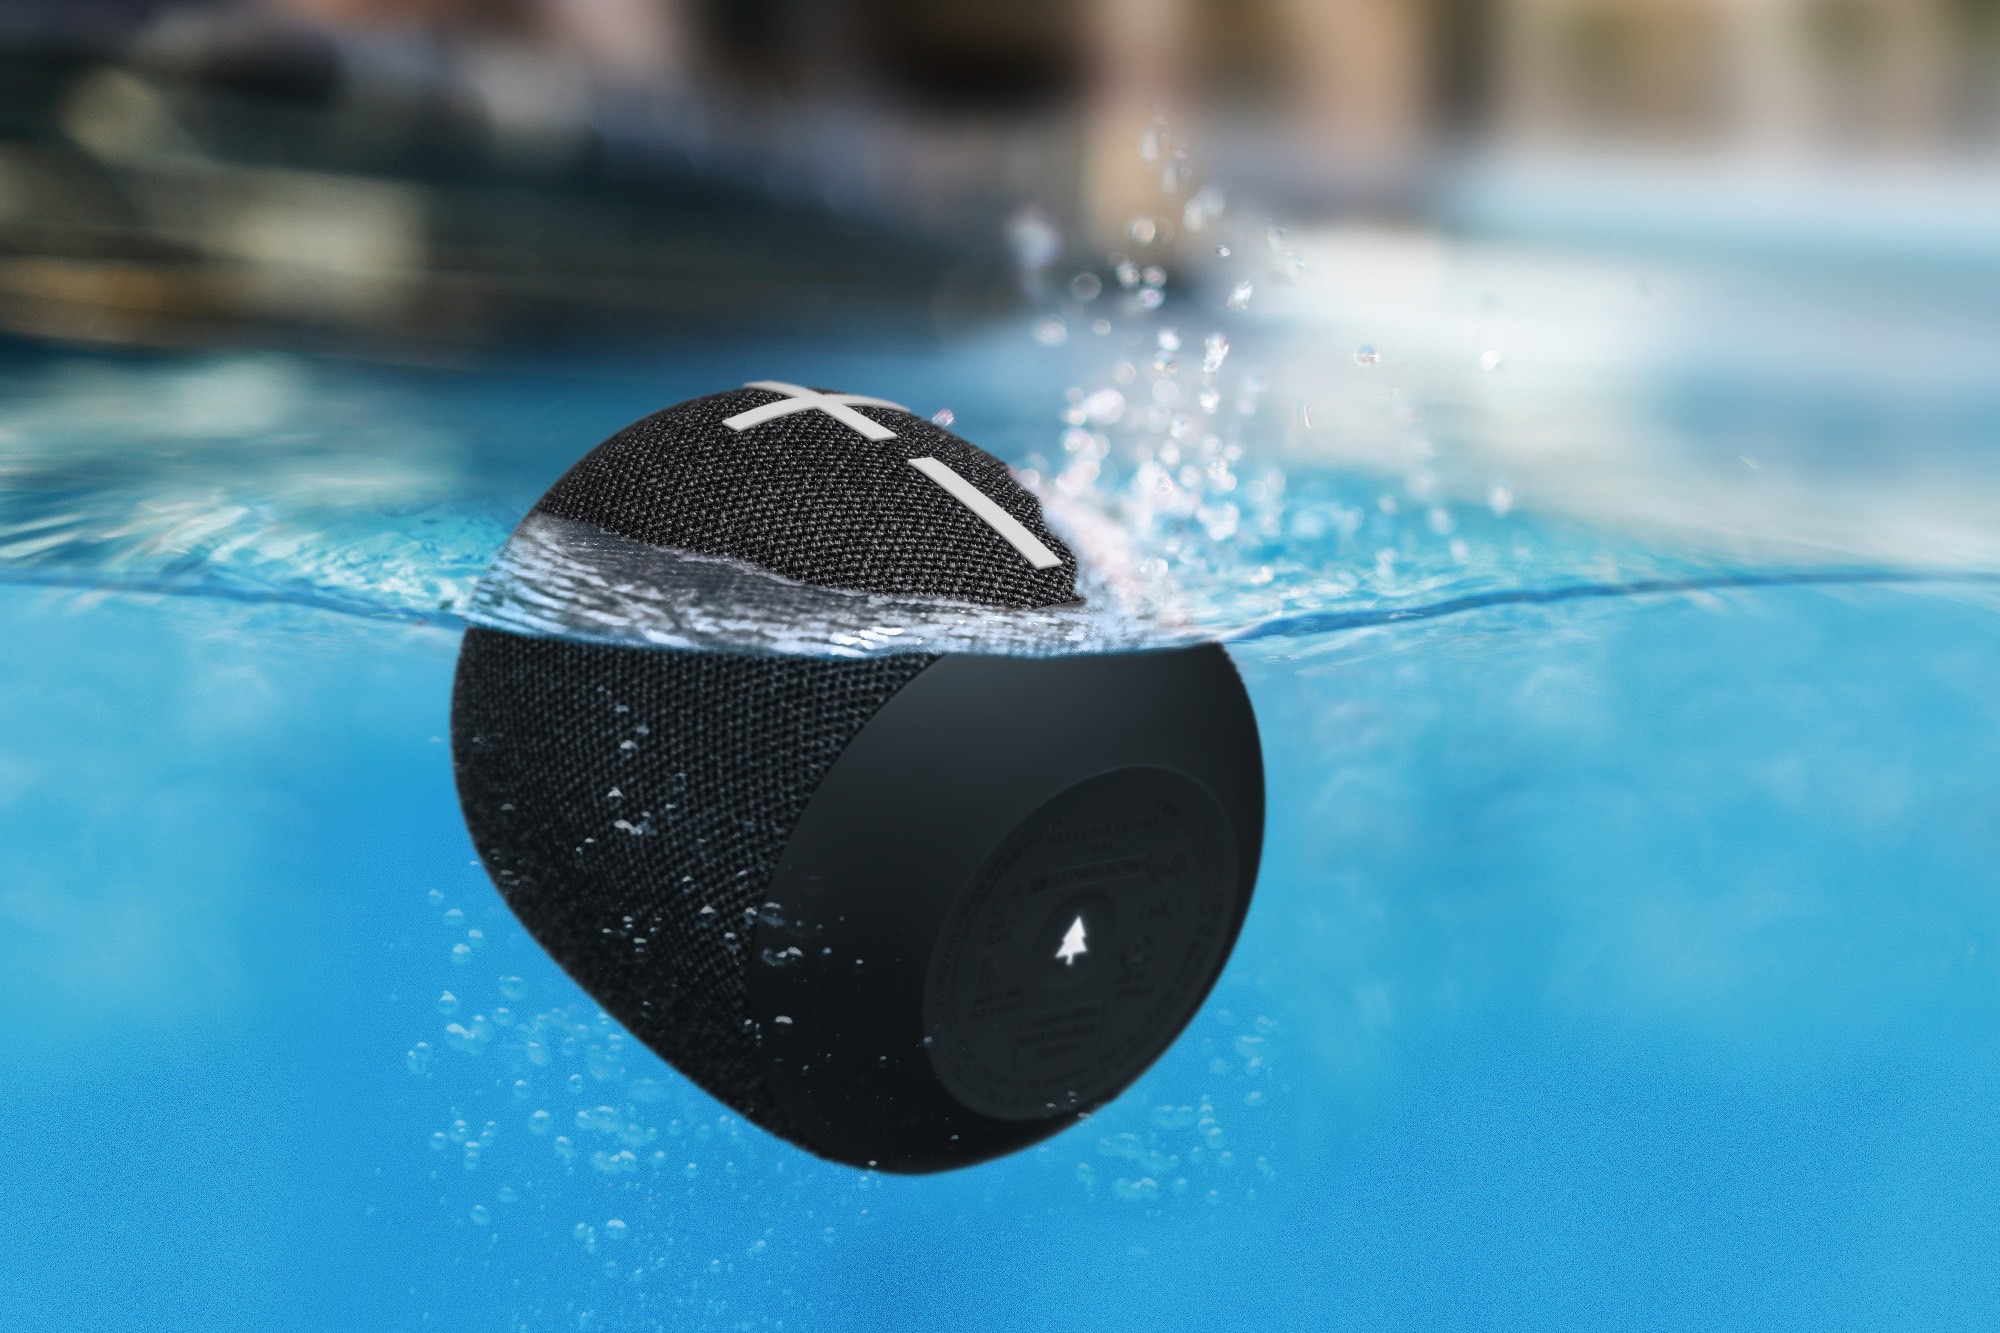 The Ultimate Ears Wonderboom 2 in a pool.